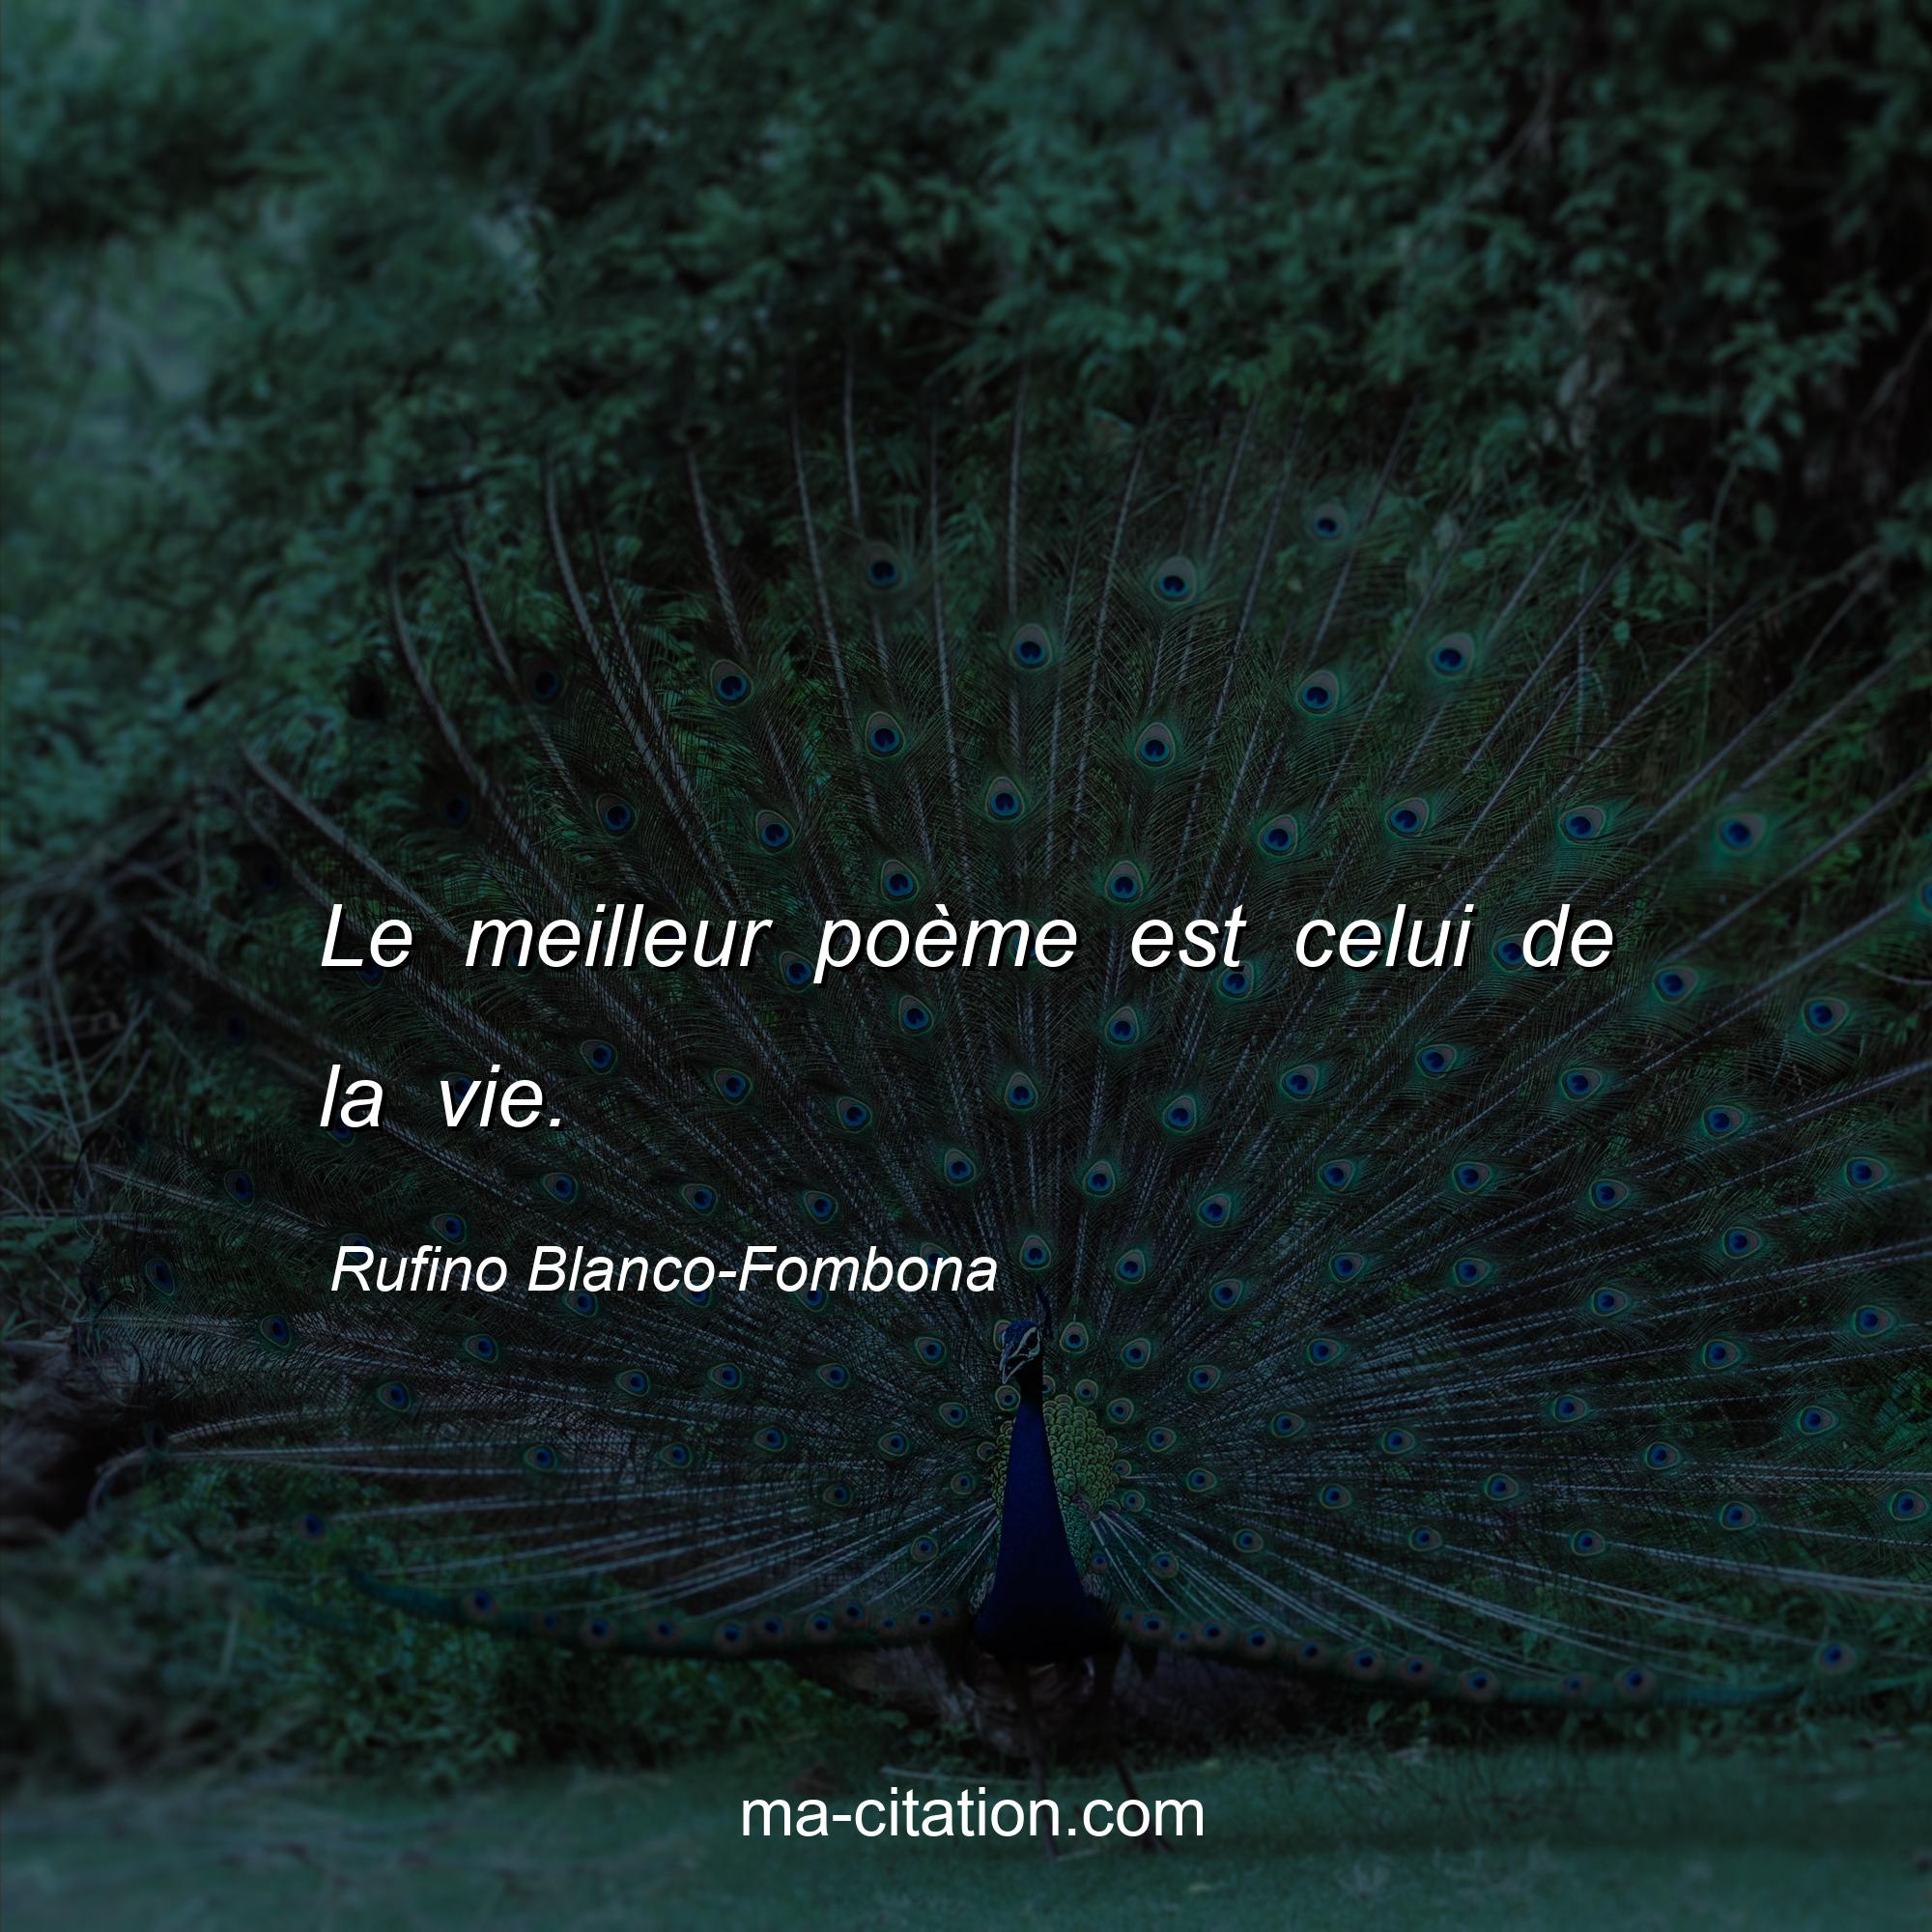 Rufino Blanco-Fombona : Le meilleur poème est celui de la vie.